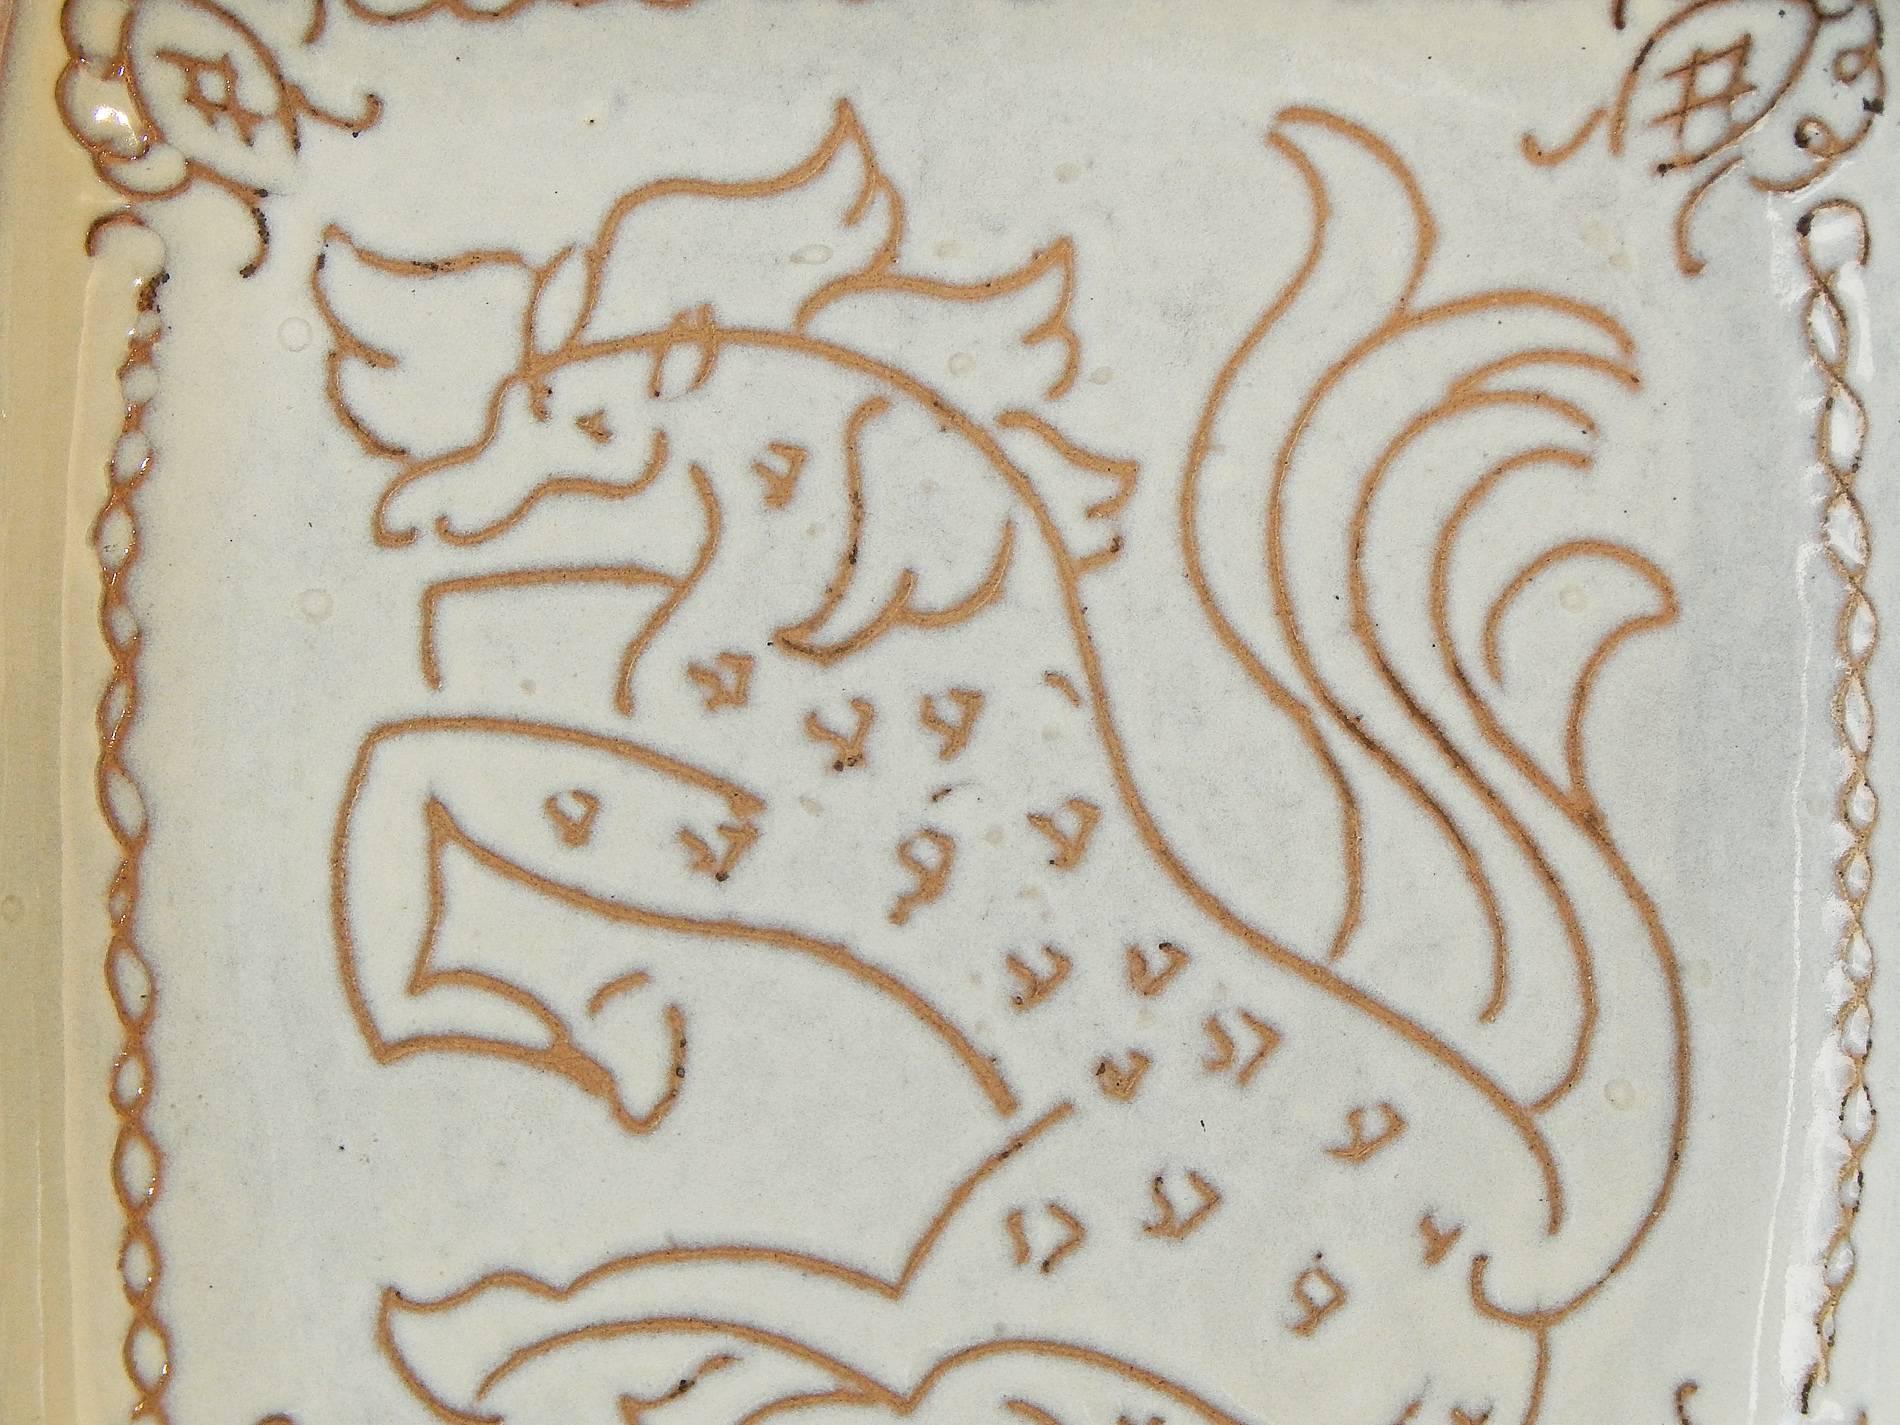 Ein großes, frühes und seltenes Beispiel für Glidden Parkers Keramikkunst. Dieses auffällige Tablett, das ein Pferd mit fliegendem Schweif und Mähne zeigt, zeugt von seiner Meisterschaft in der Sgraffito-Technik, bei der der Künstler ein Muster